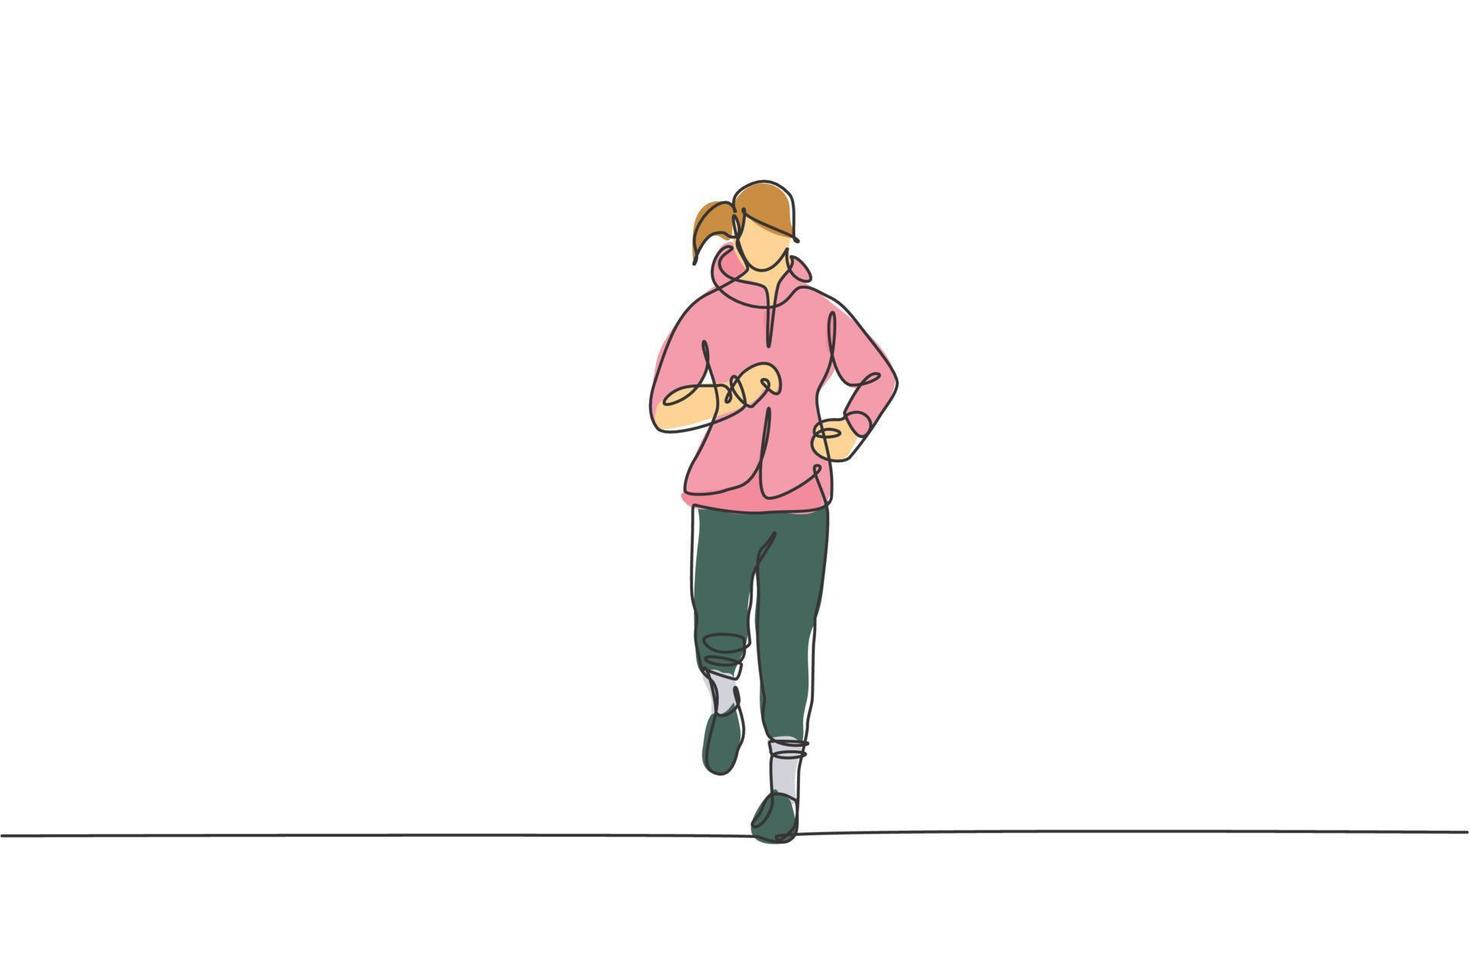 uno continuo línea dibujo de joven deportivo corredor mujer relajarse corriendo a campo. sano estilo de vida y divertido trotar deporte concepto. dinámica soltero línea dibujar diseño vector ilustración gráfico